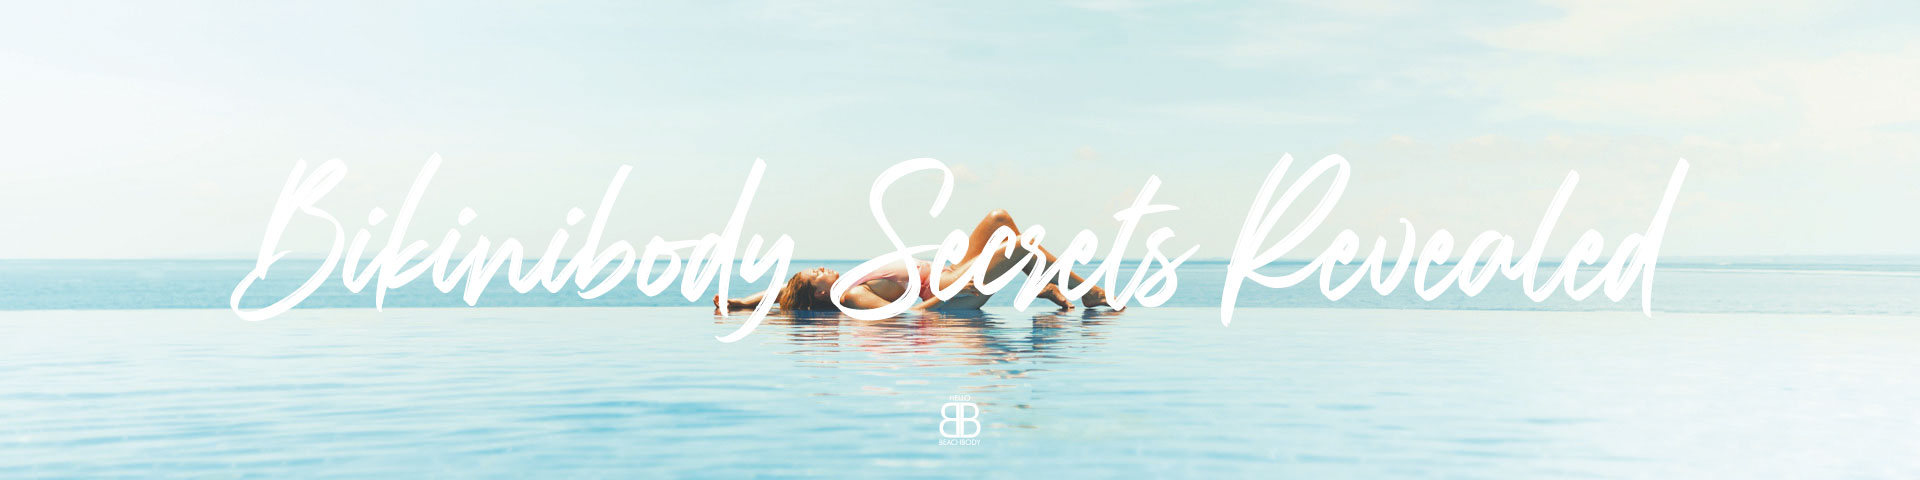 Bikinibody Secrets Revealed

Mit unseren Bikinibody Secrets geben wir Dir 10 heiße Tipps an die Hand, mit denen Du es ganz easy schaffst, ein paar Kilo abzunehmen oder gar das ganze Jahr über eine traumhaft schöne Bikinifigur zu halten! 